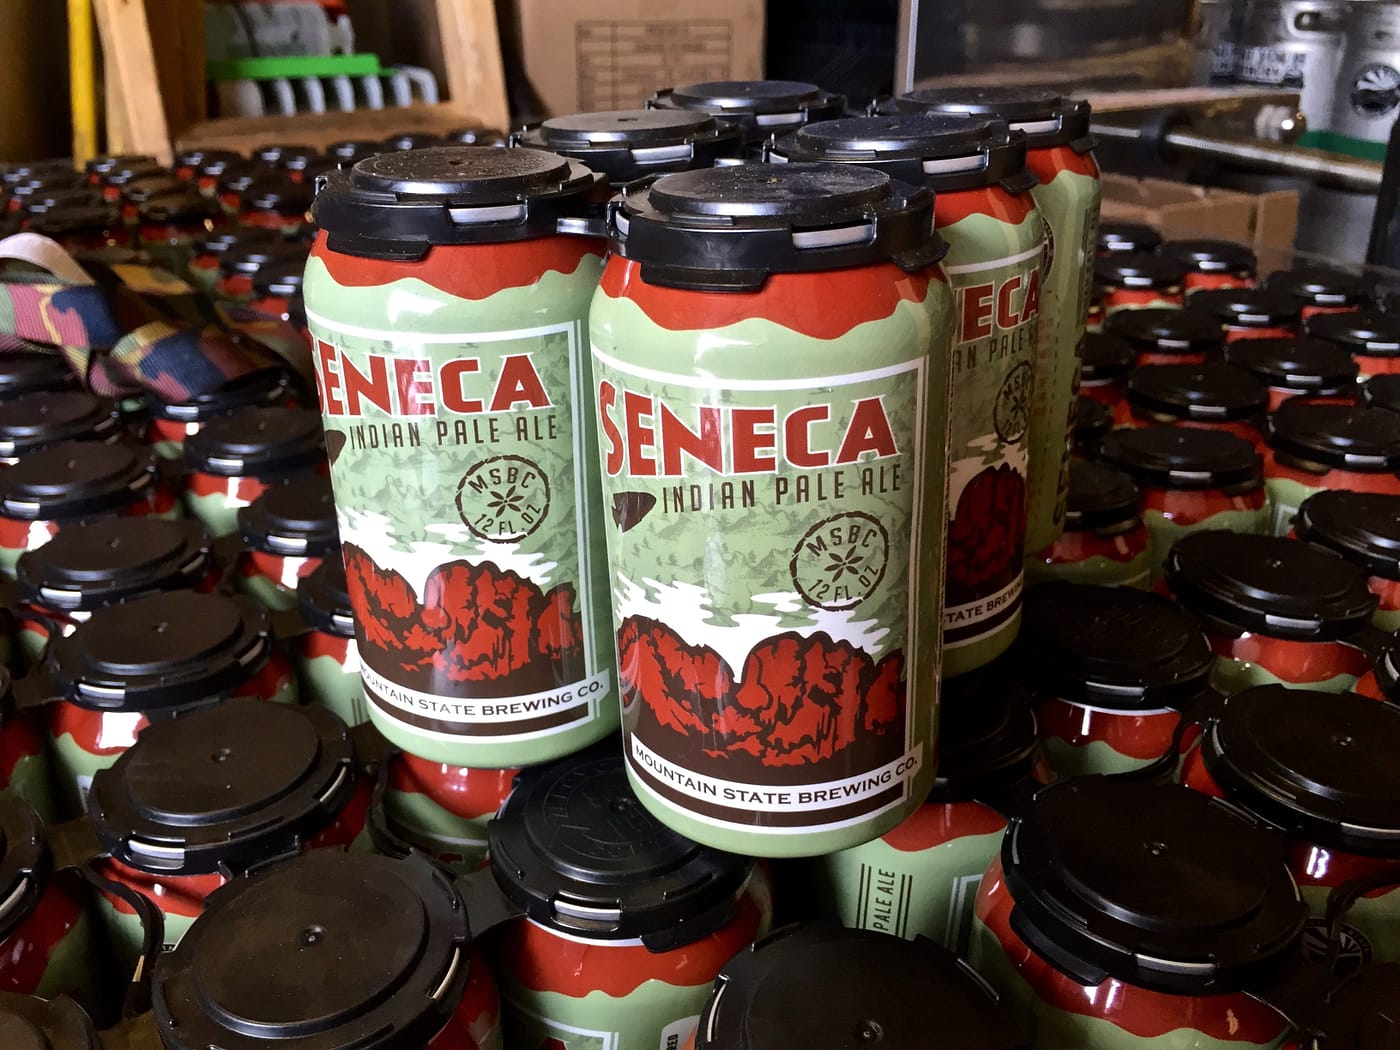 Seneca IPA cans